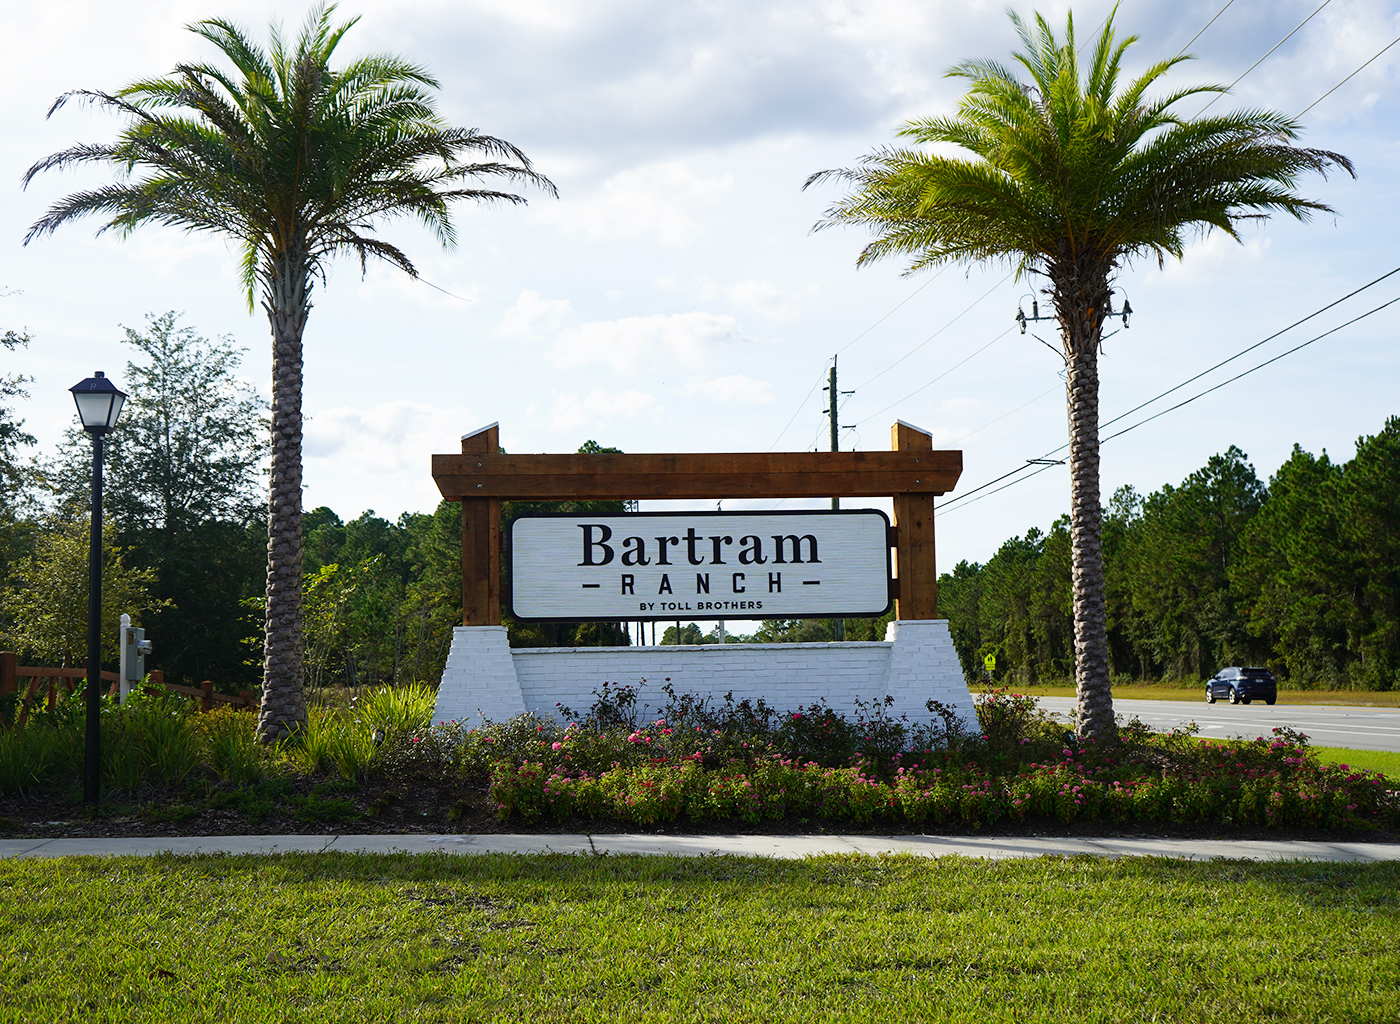 Bartram Ranch